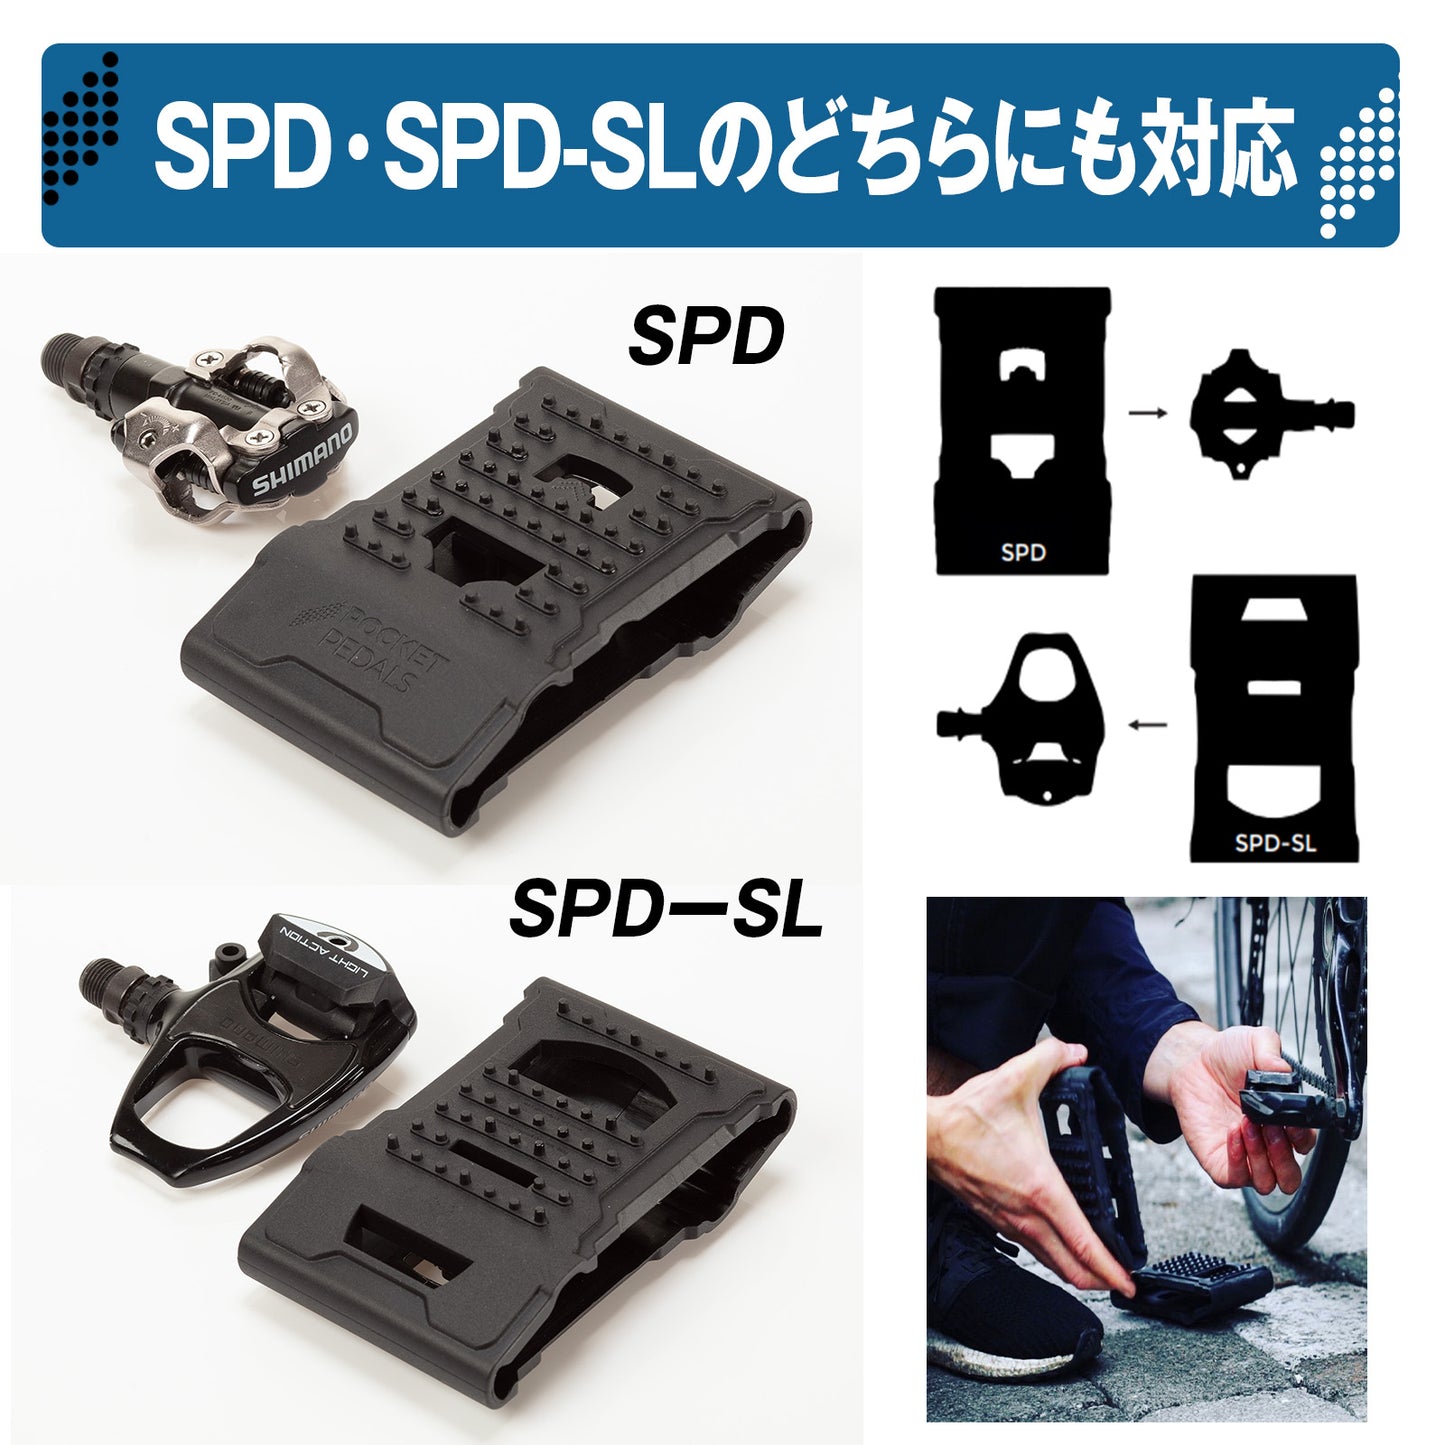 Pocket Pedals（ポケットペダル）SPD/SPD-SL両面対応 ビンディングペダルアダプター